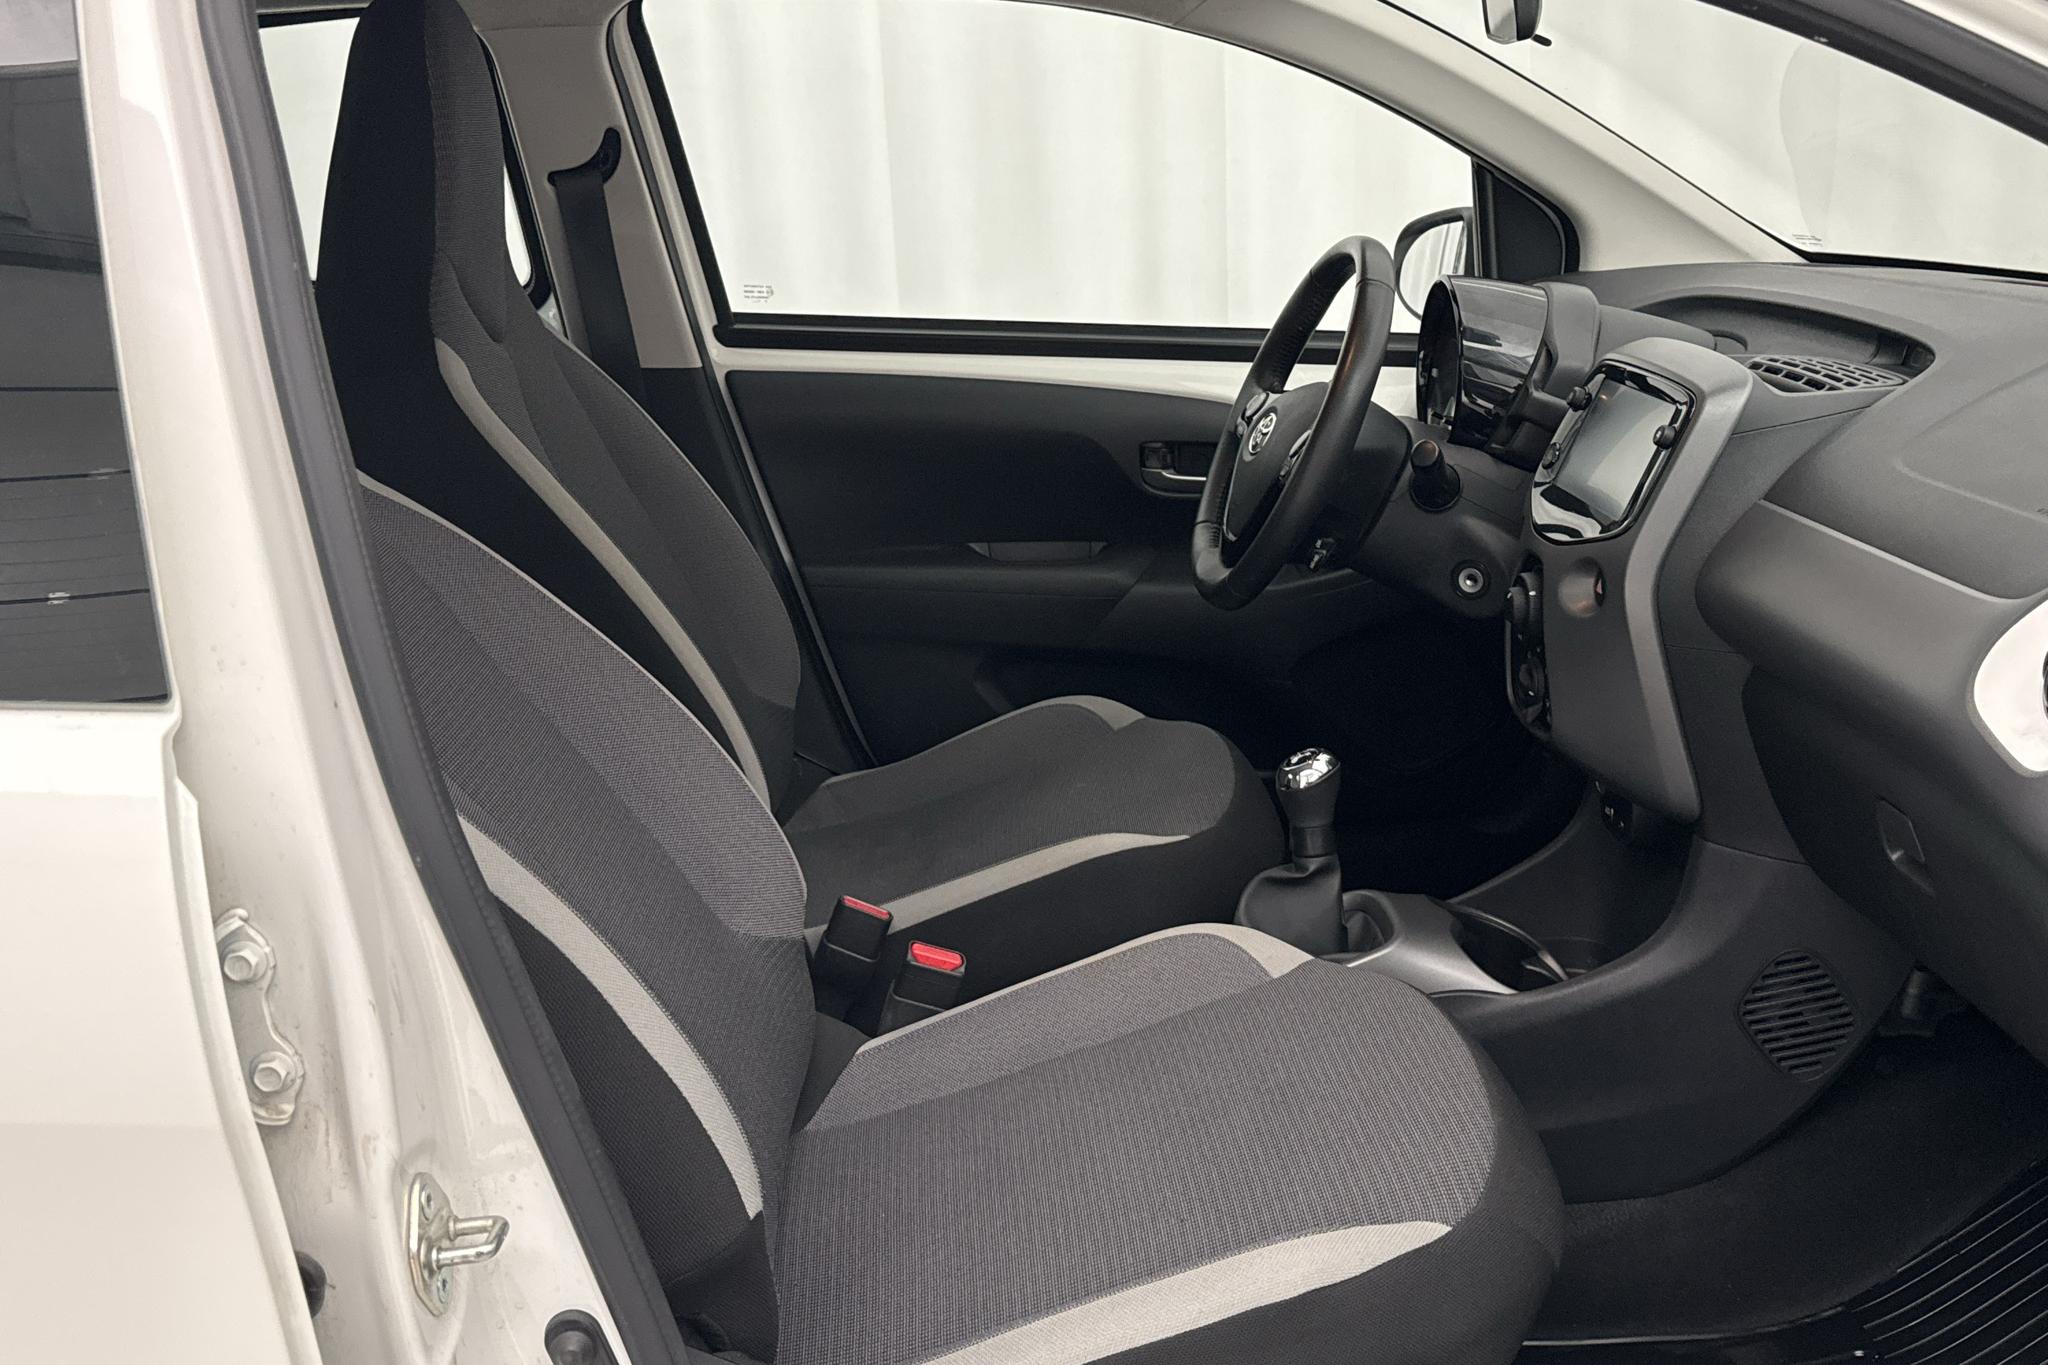 Toyota Aygo 1.0 5dr (72hk) - 12 280 km - Manualna - biały - 2021